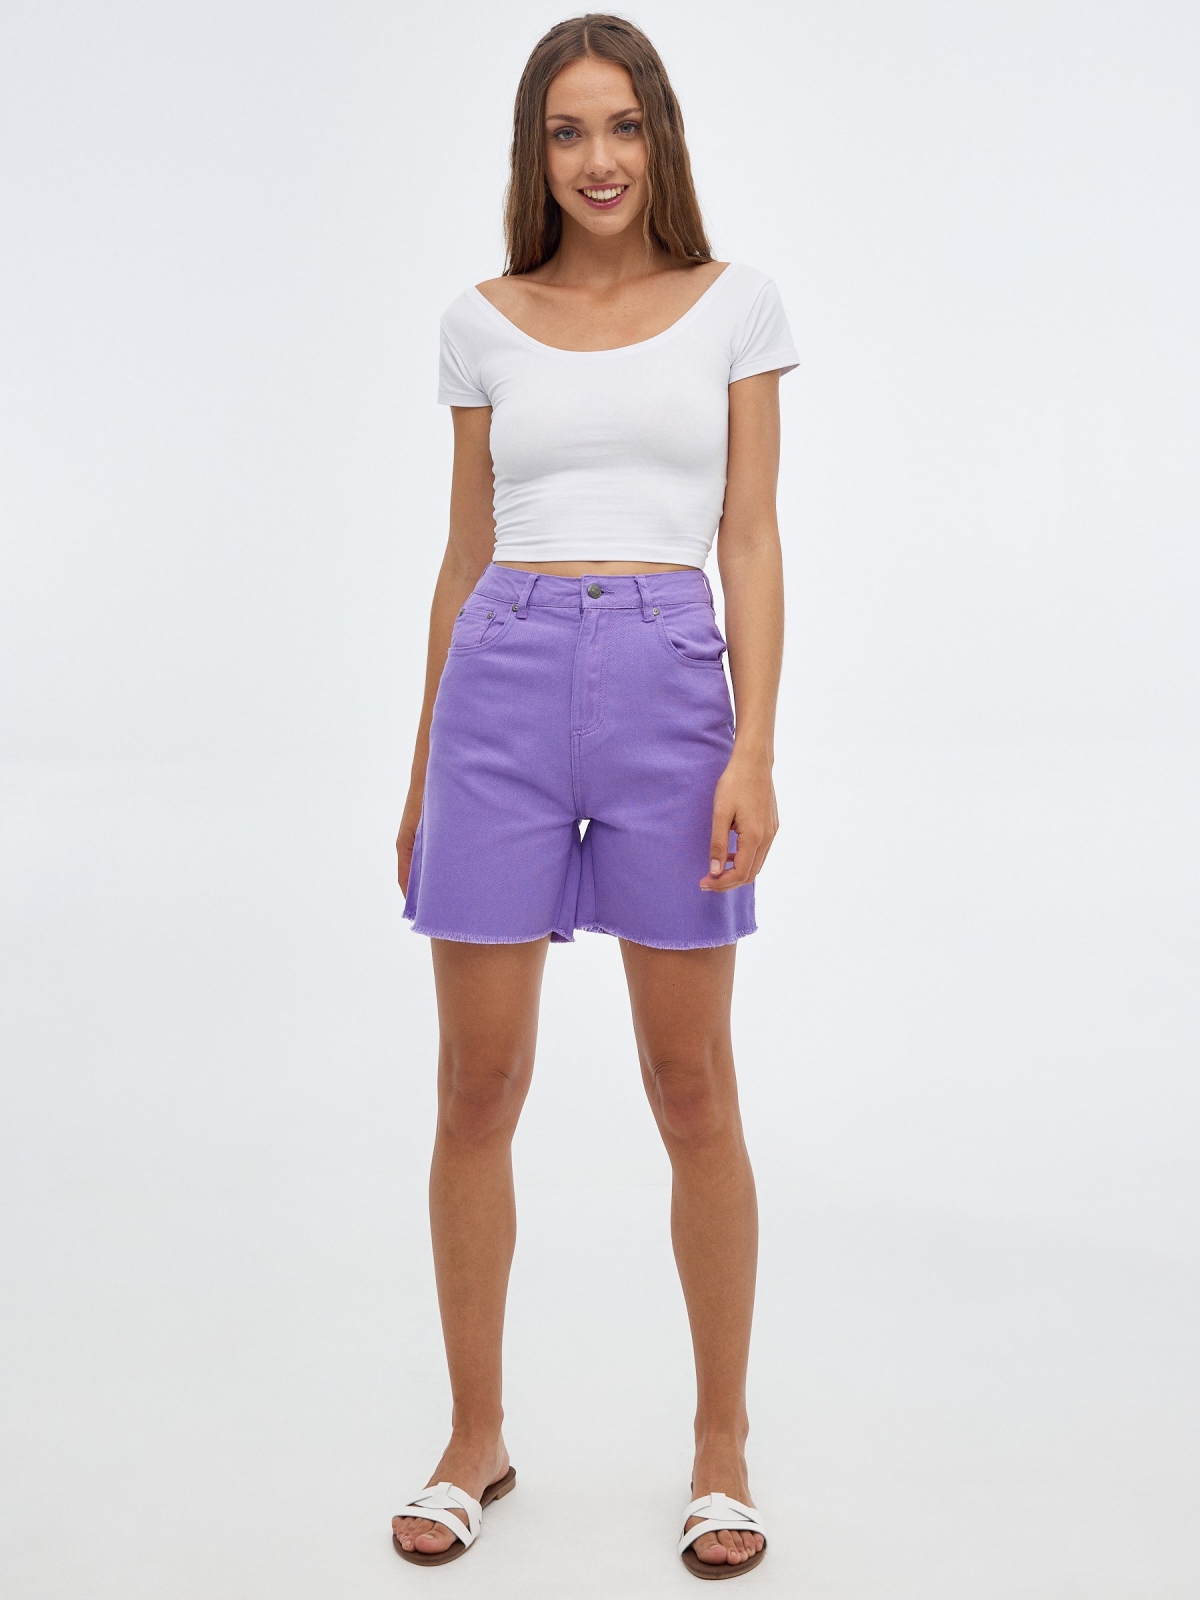 Vintage denim shorts lilac front view